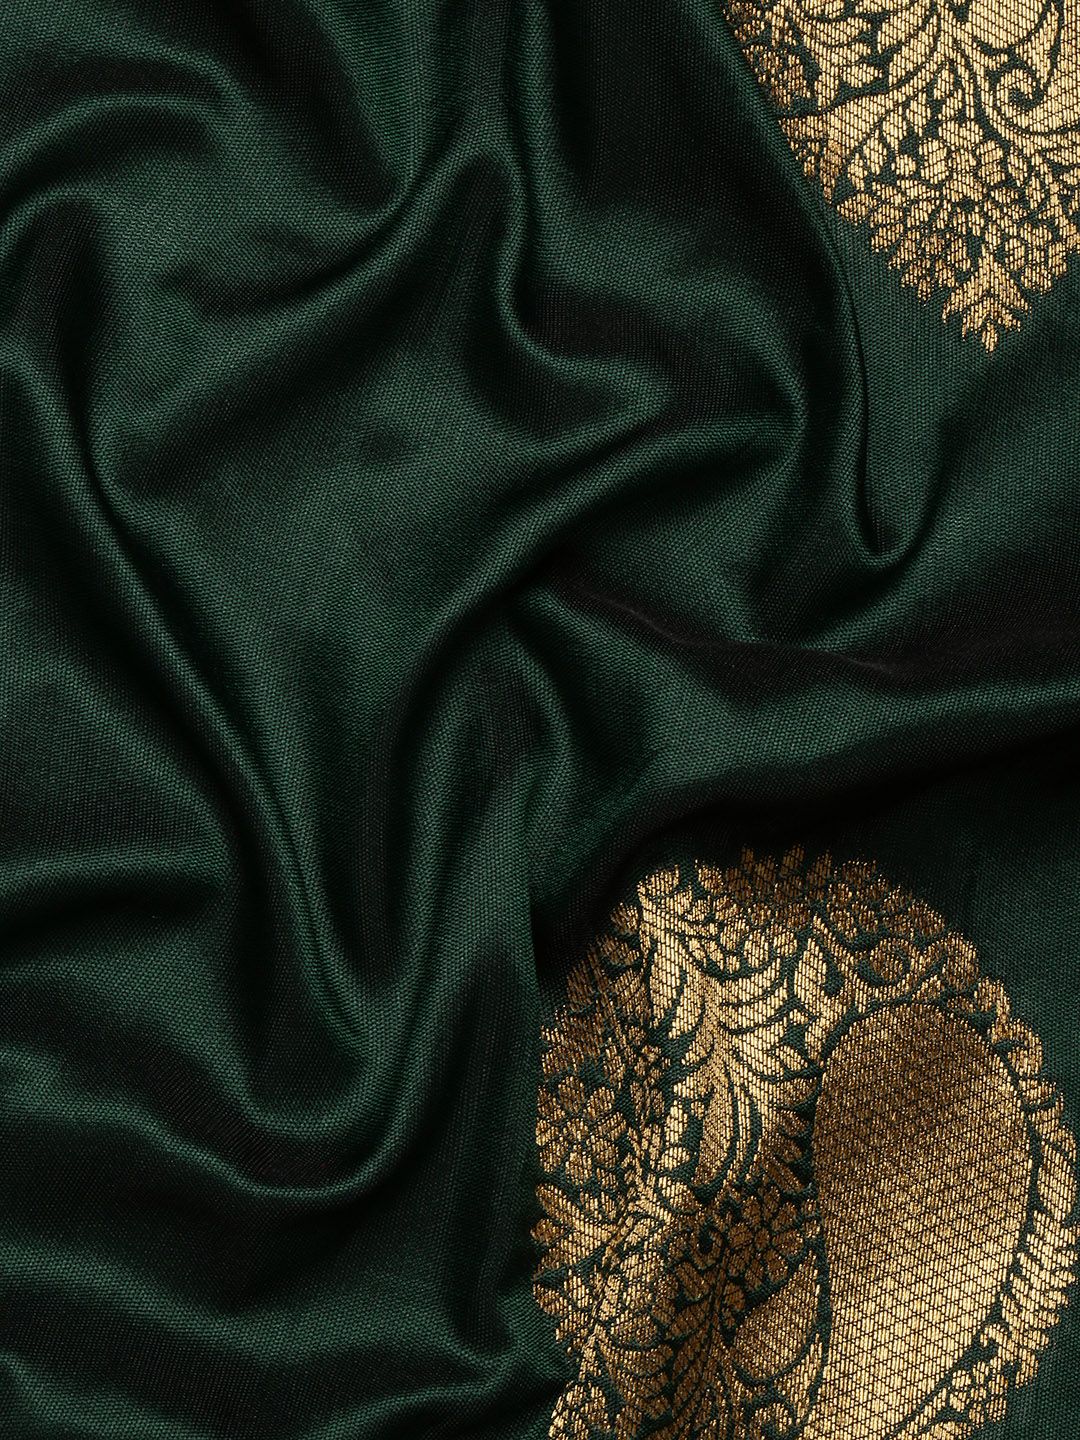 Green Banarasi silk sarees for weddings